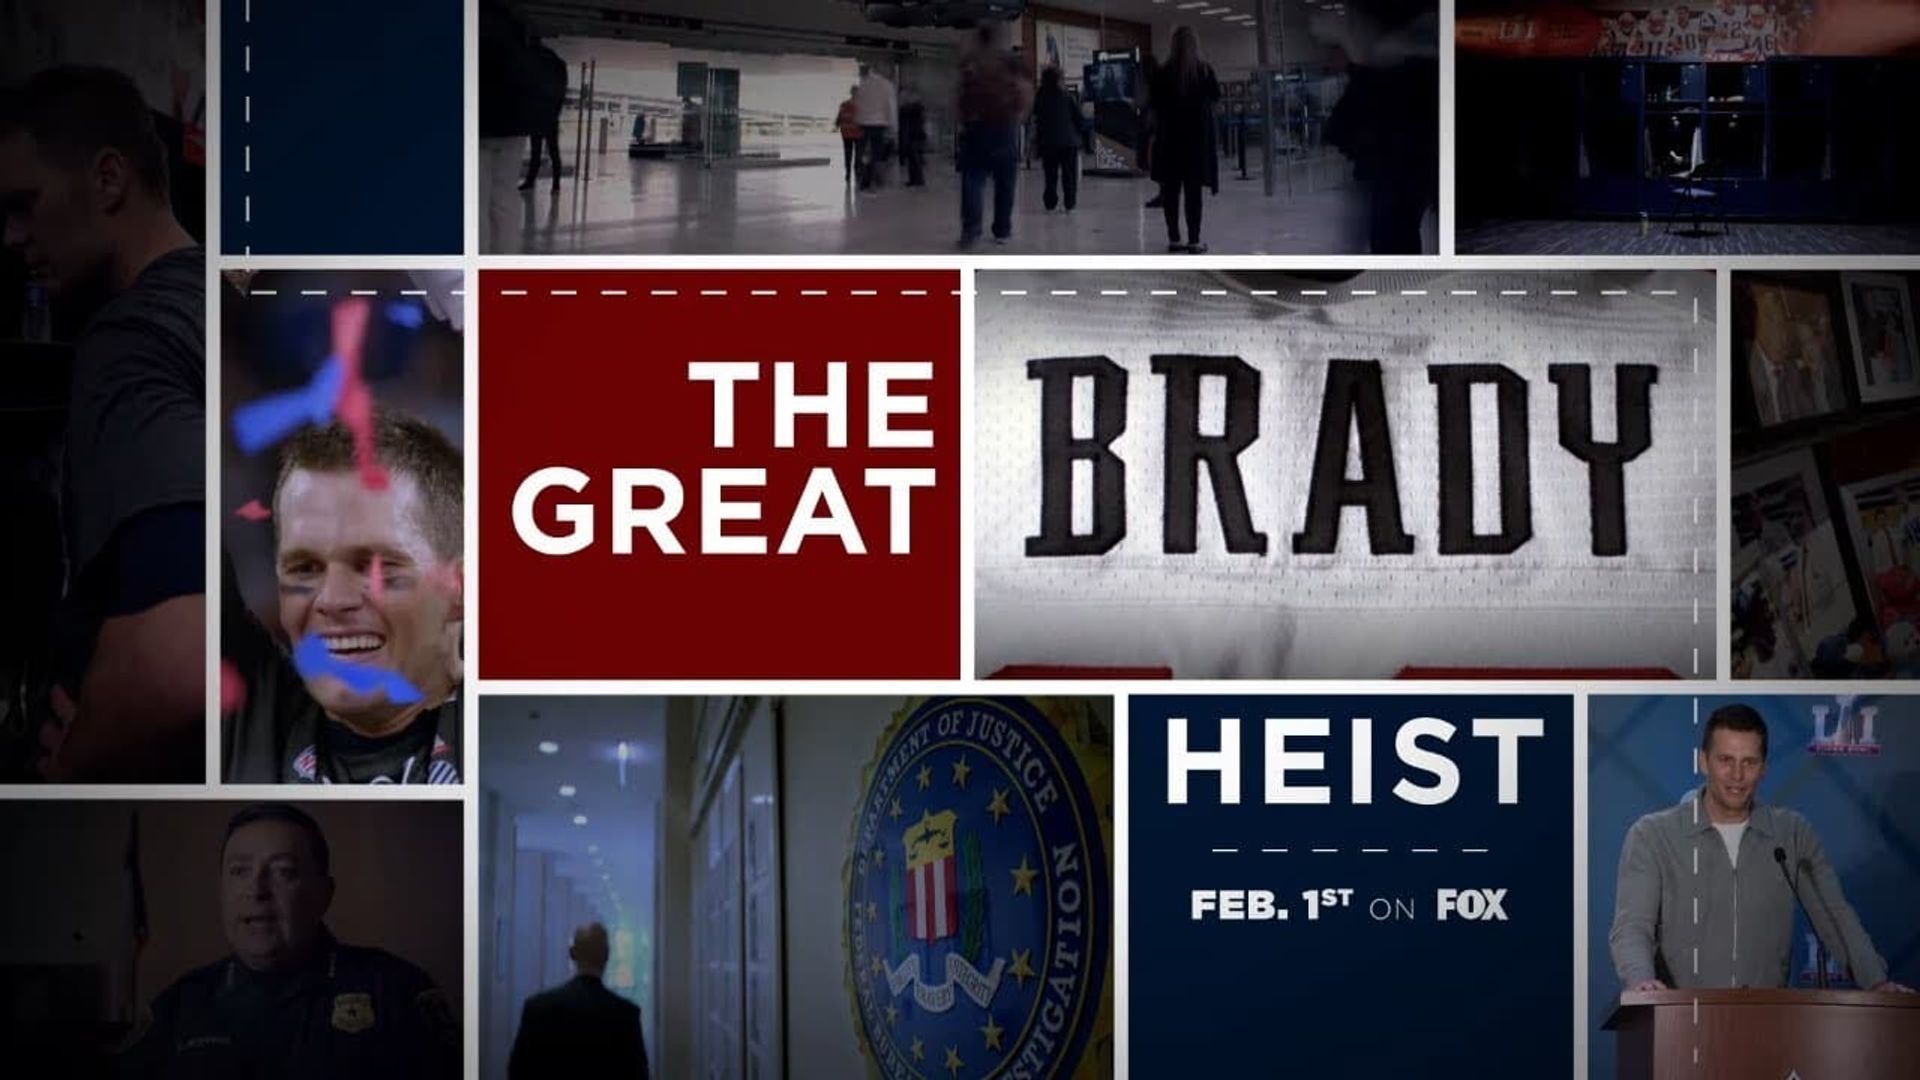 The Great Brady Heist background